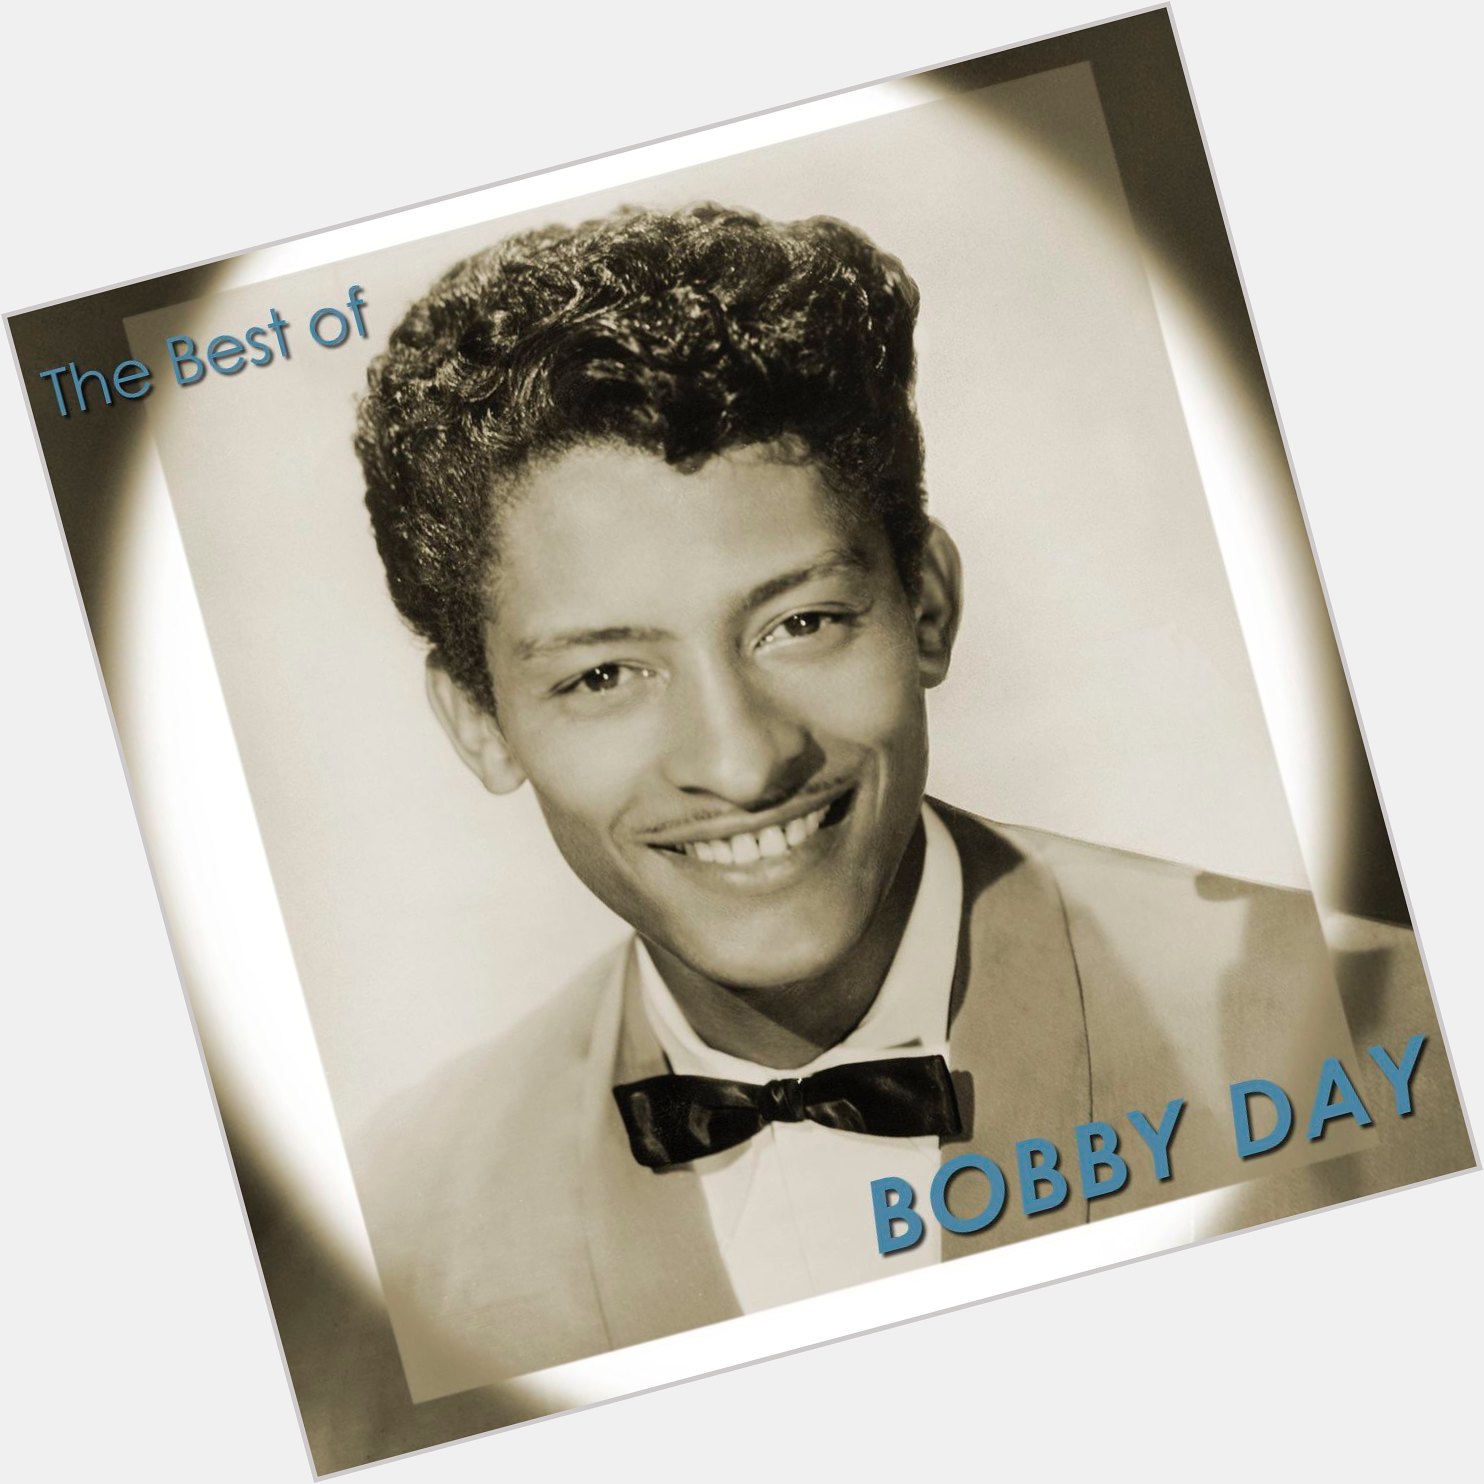 Bobby Day birthday 2015